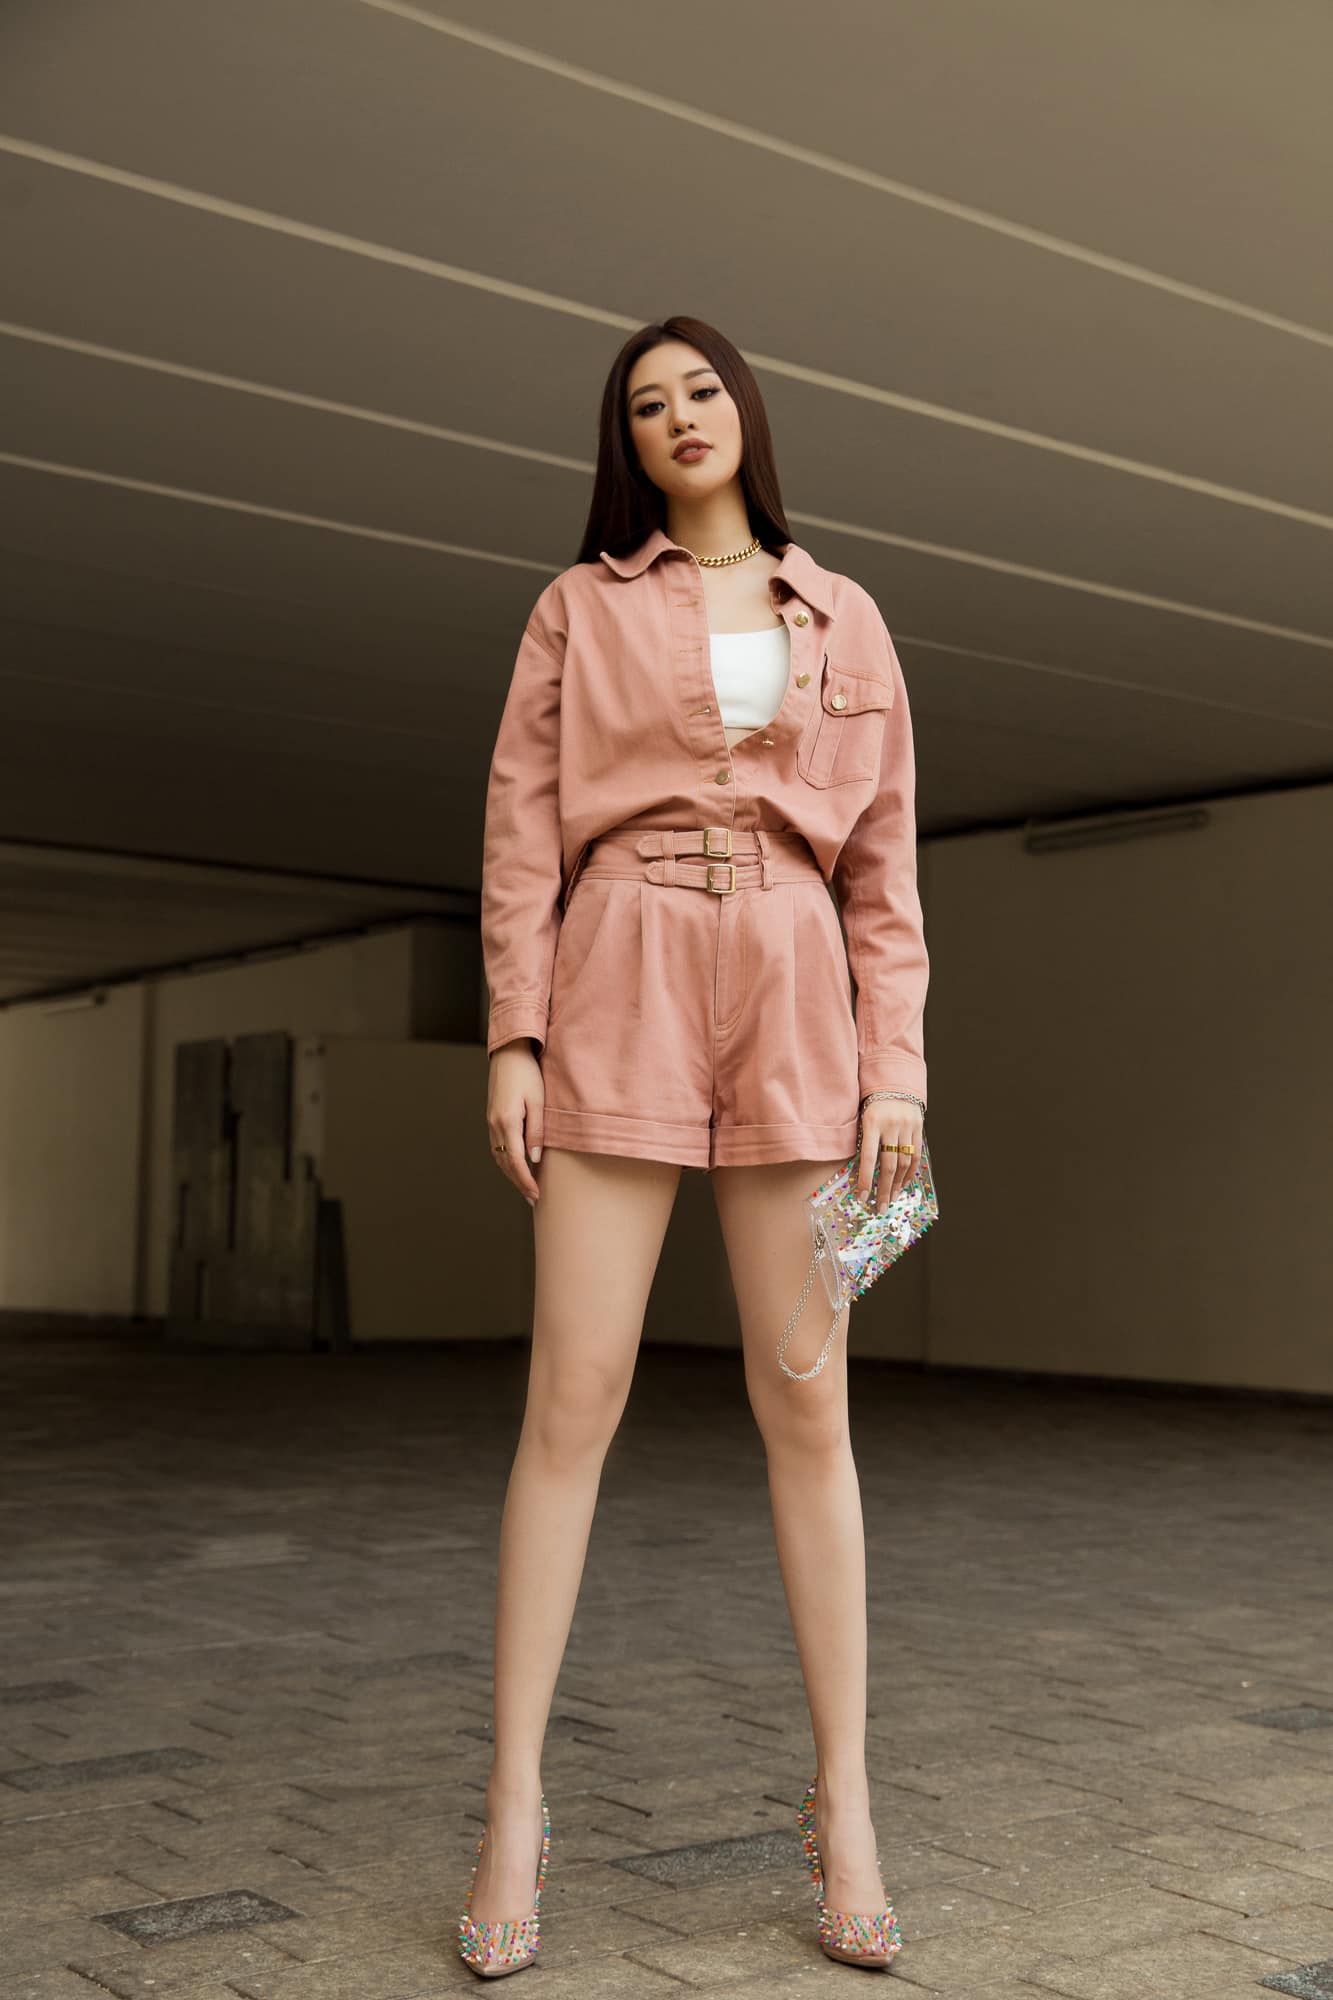 Hoa hậu Khánh Vân khoe đôi chân dài thẳng tắp với set đồ hồng nữ tính. Nàng hậu đang bắt đầu quay lại các hoạt động nghệ thuật song song với công tác từ thiện, hoạt động xã hội.